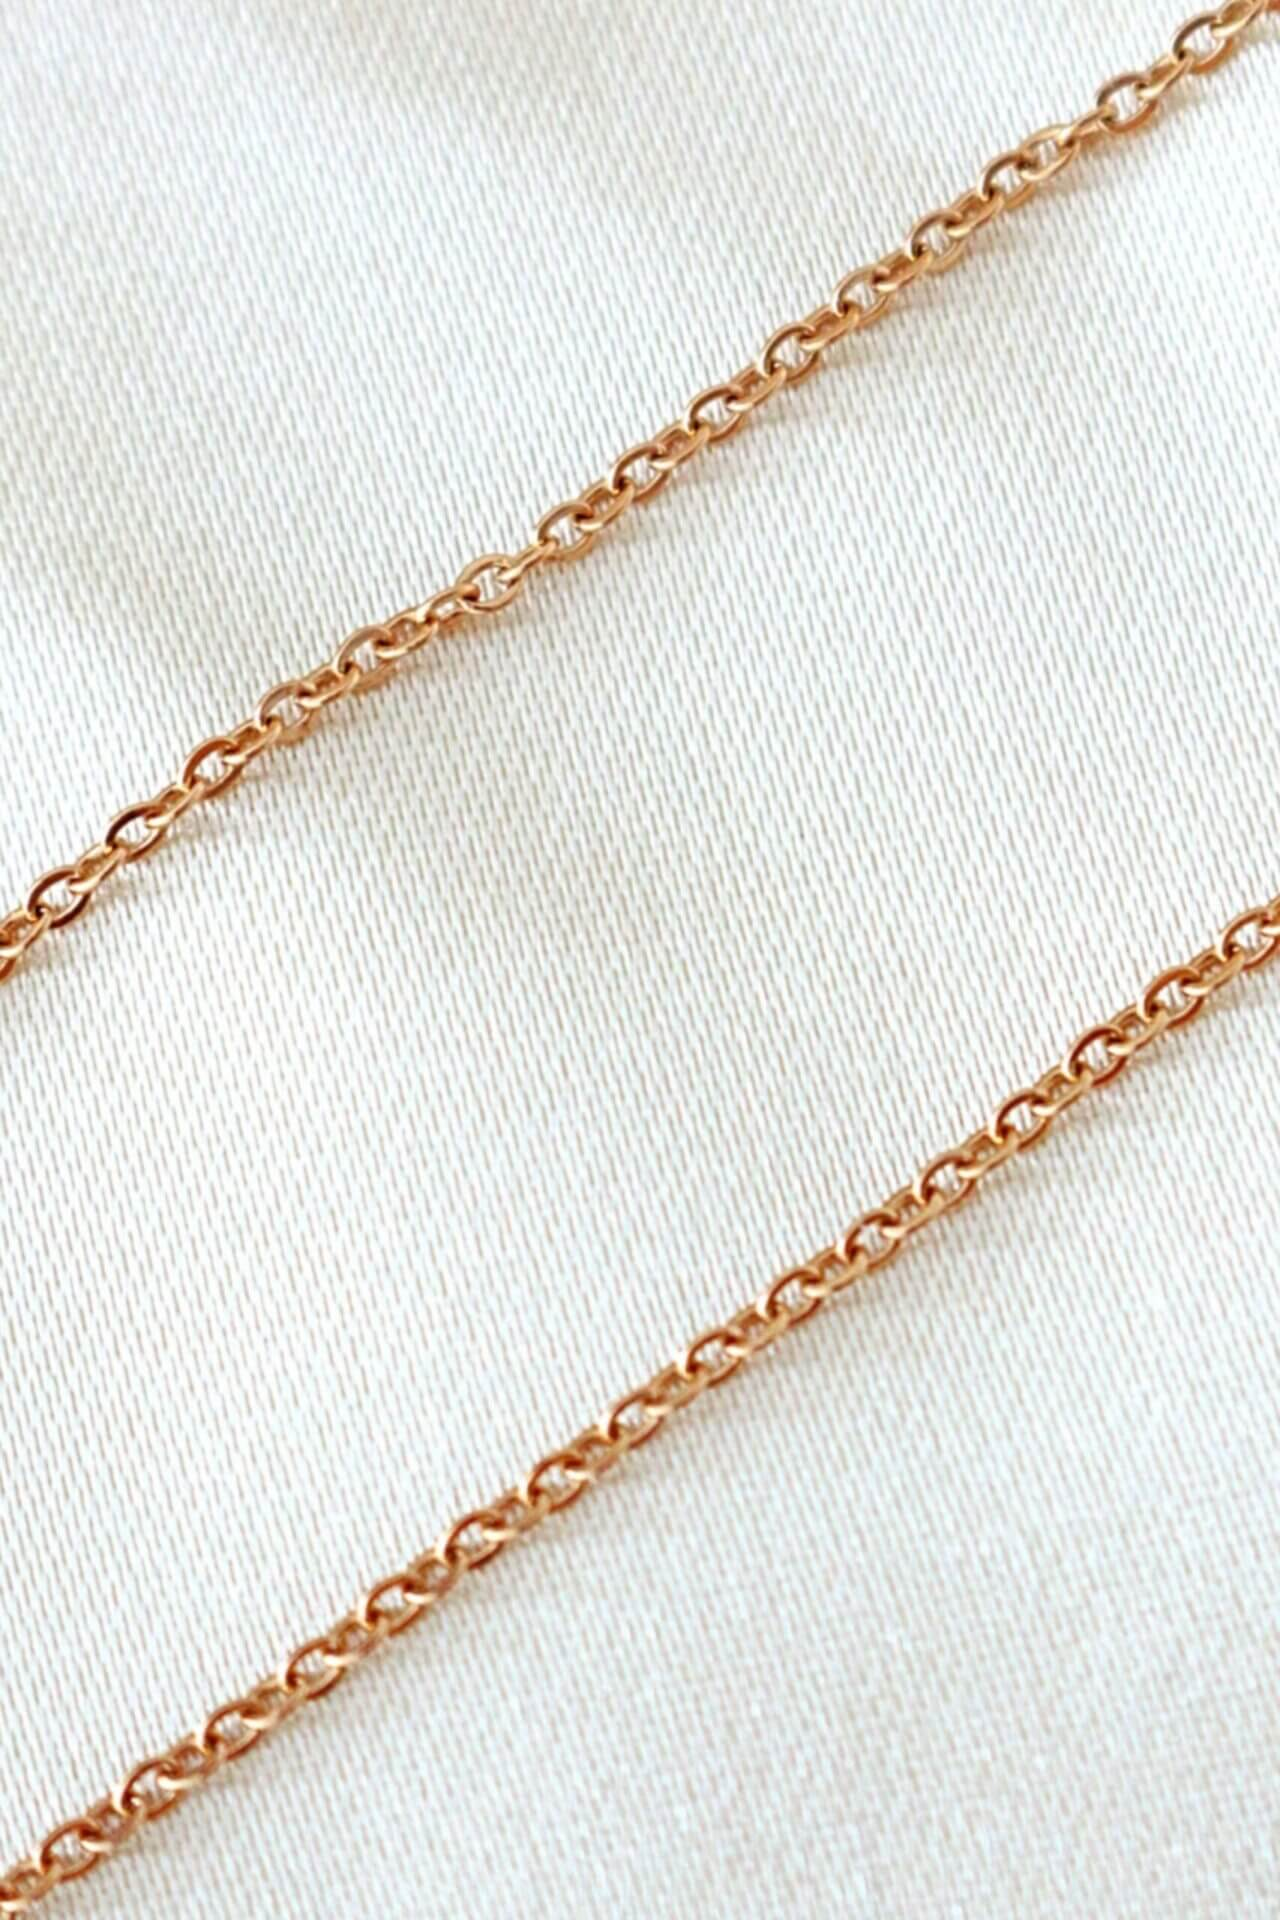 18K Rose Gold Filled Necklace